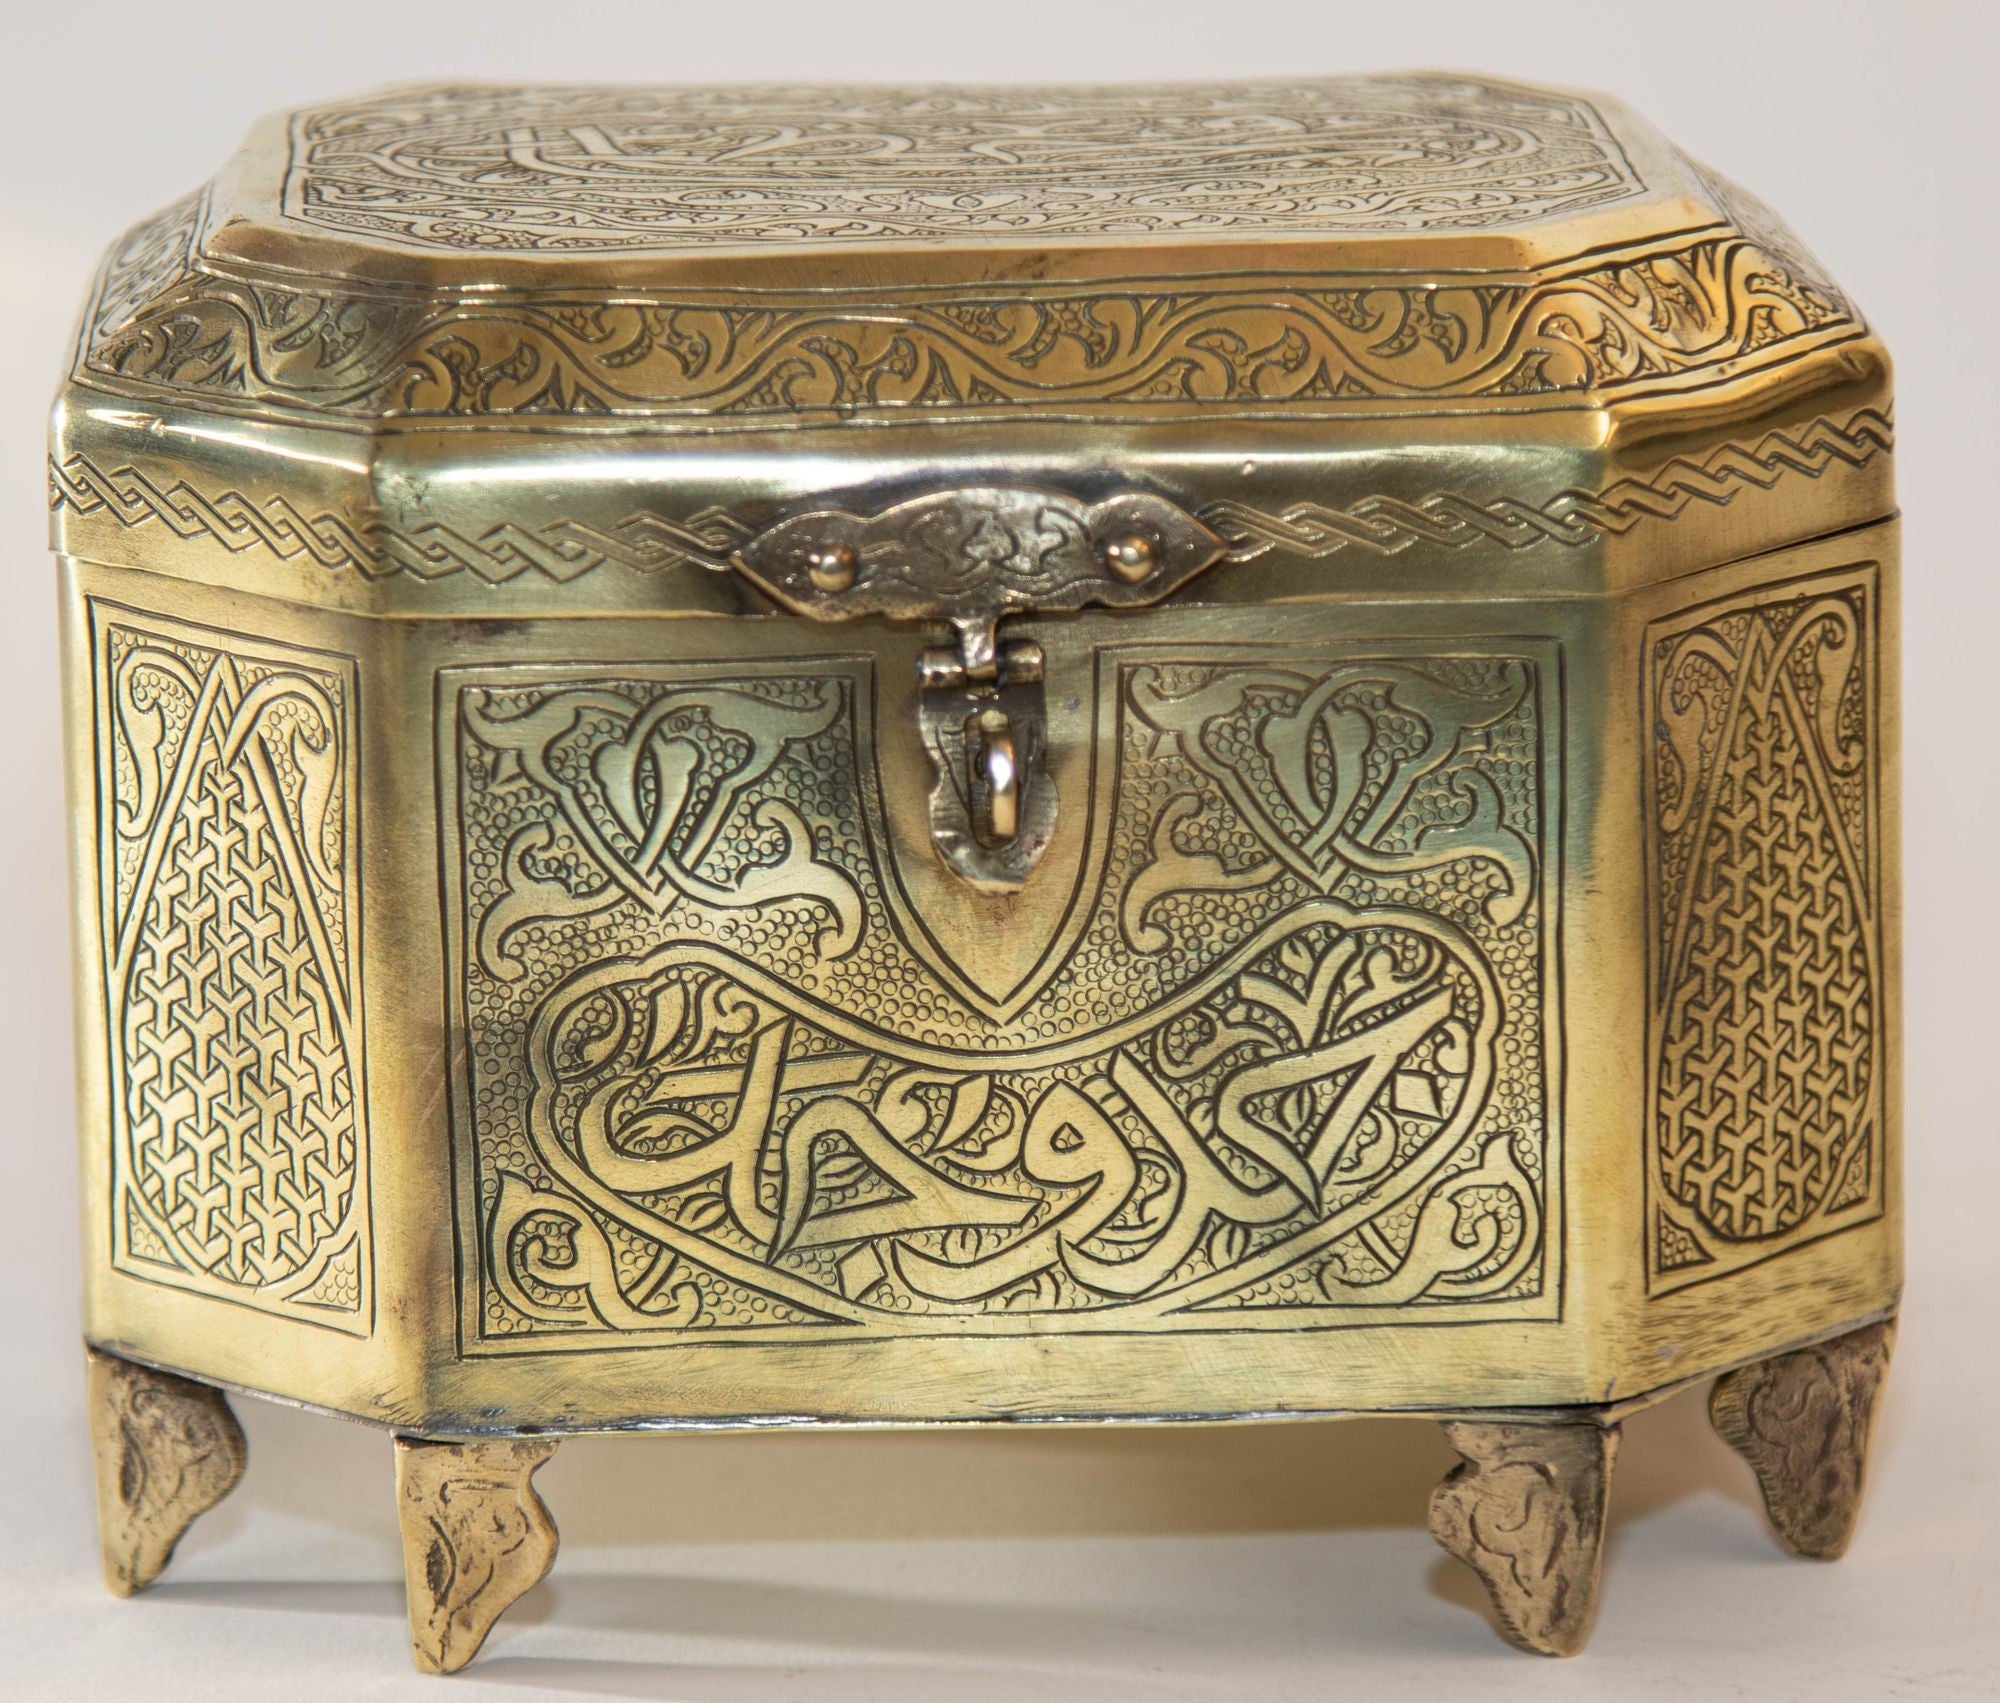 1920 Persian Brass Jewelry Box in Mamluk Revival Damascene Moorish Isl -  E-mosaik